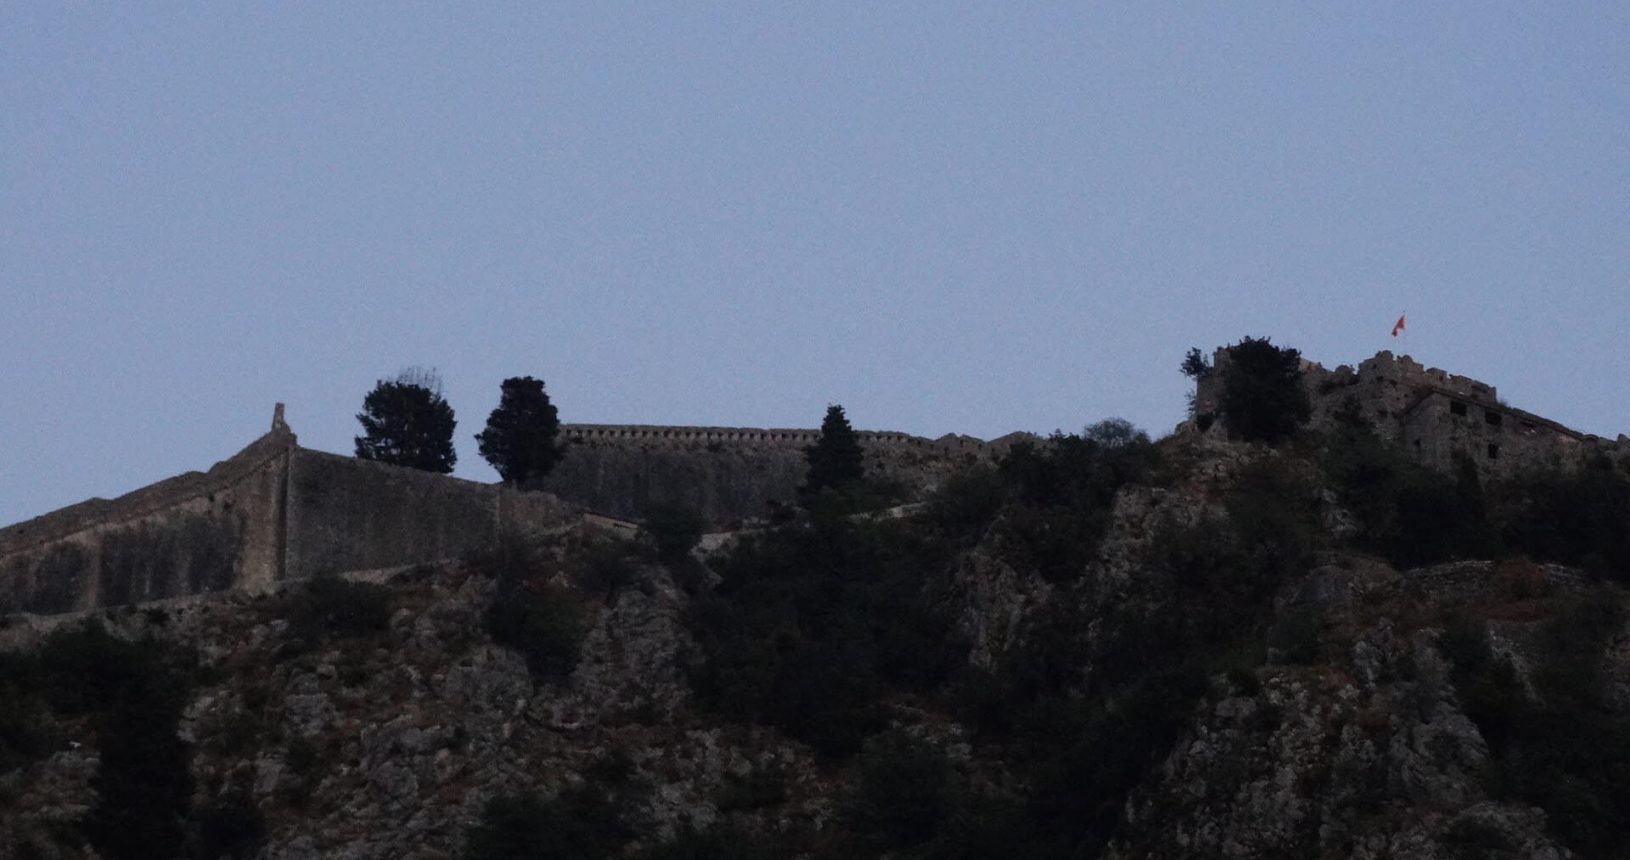 Kotor Fortress at night